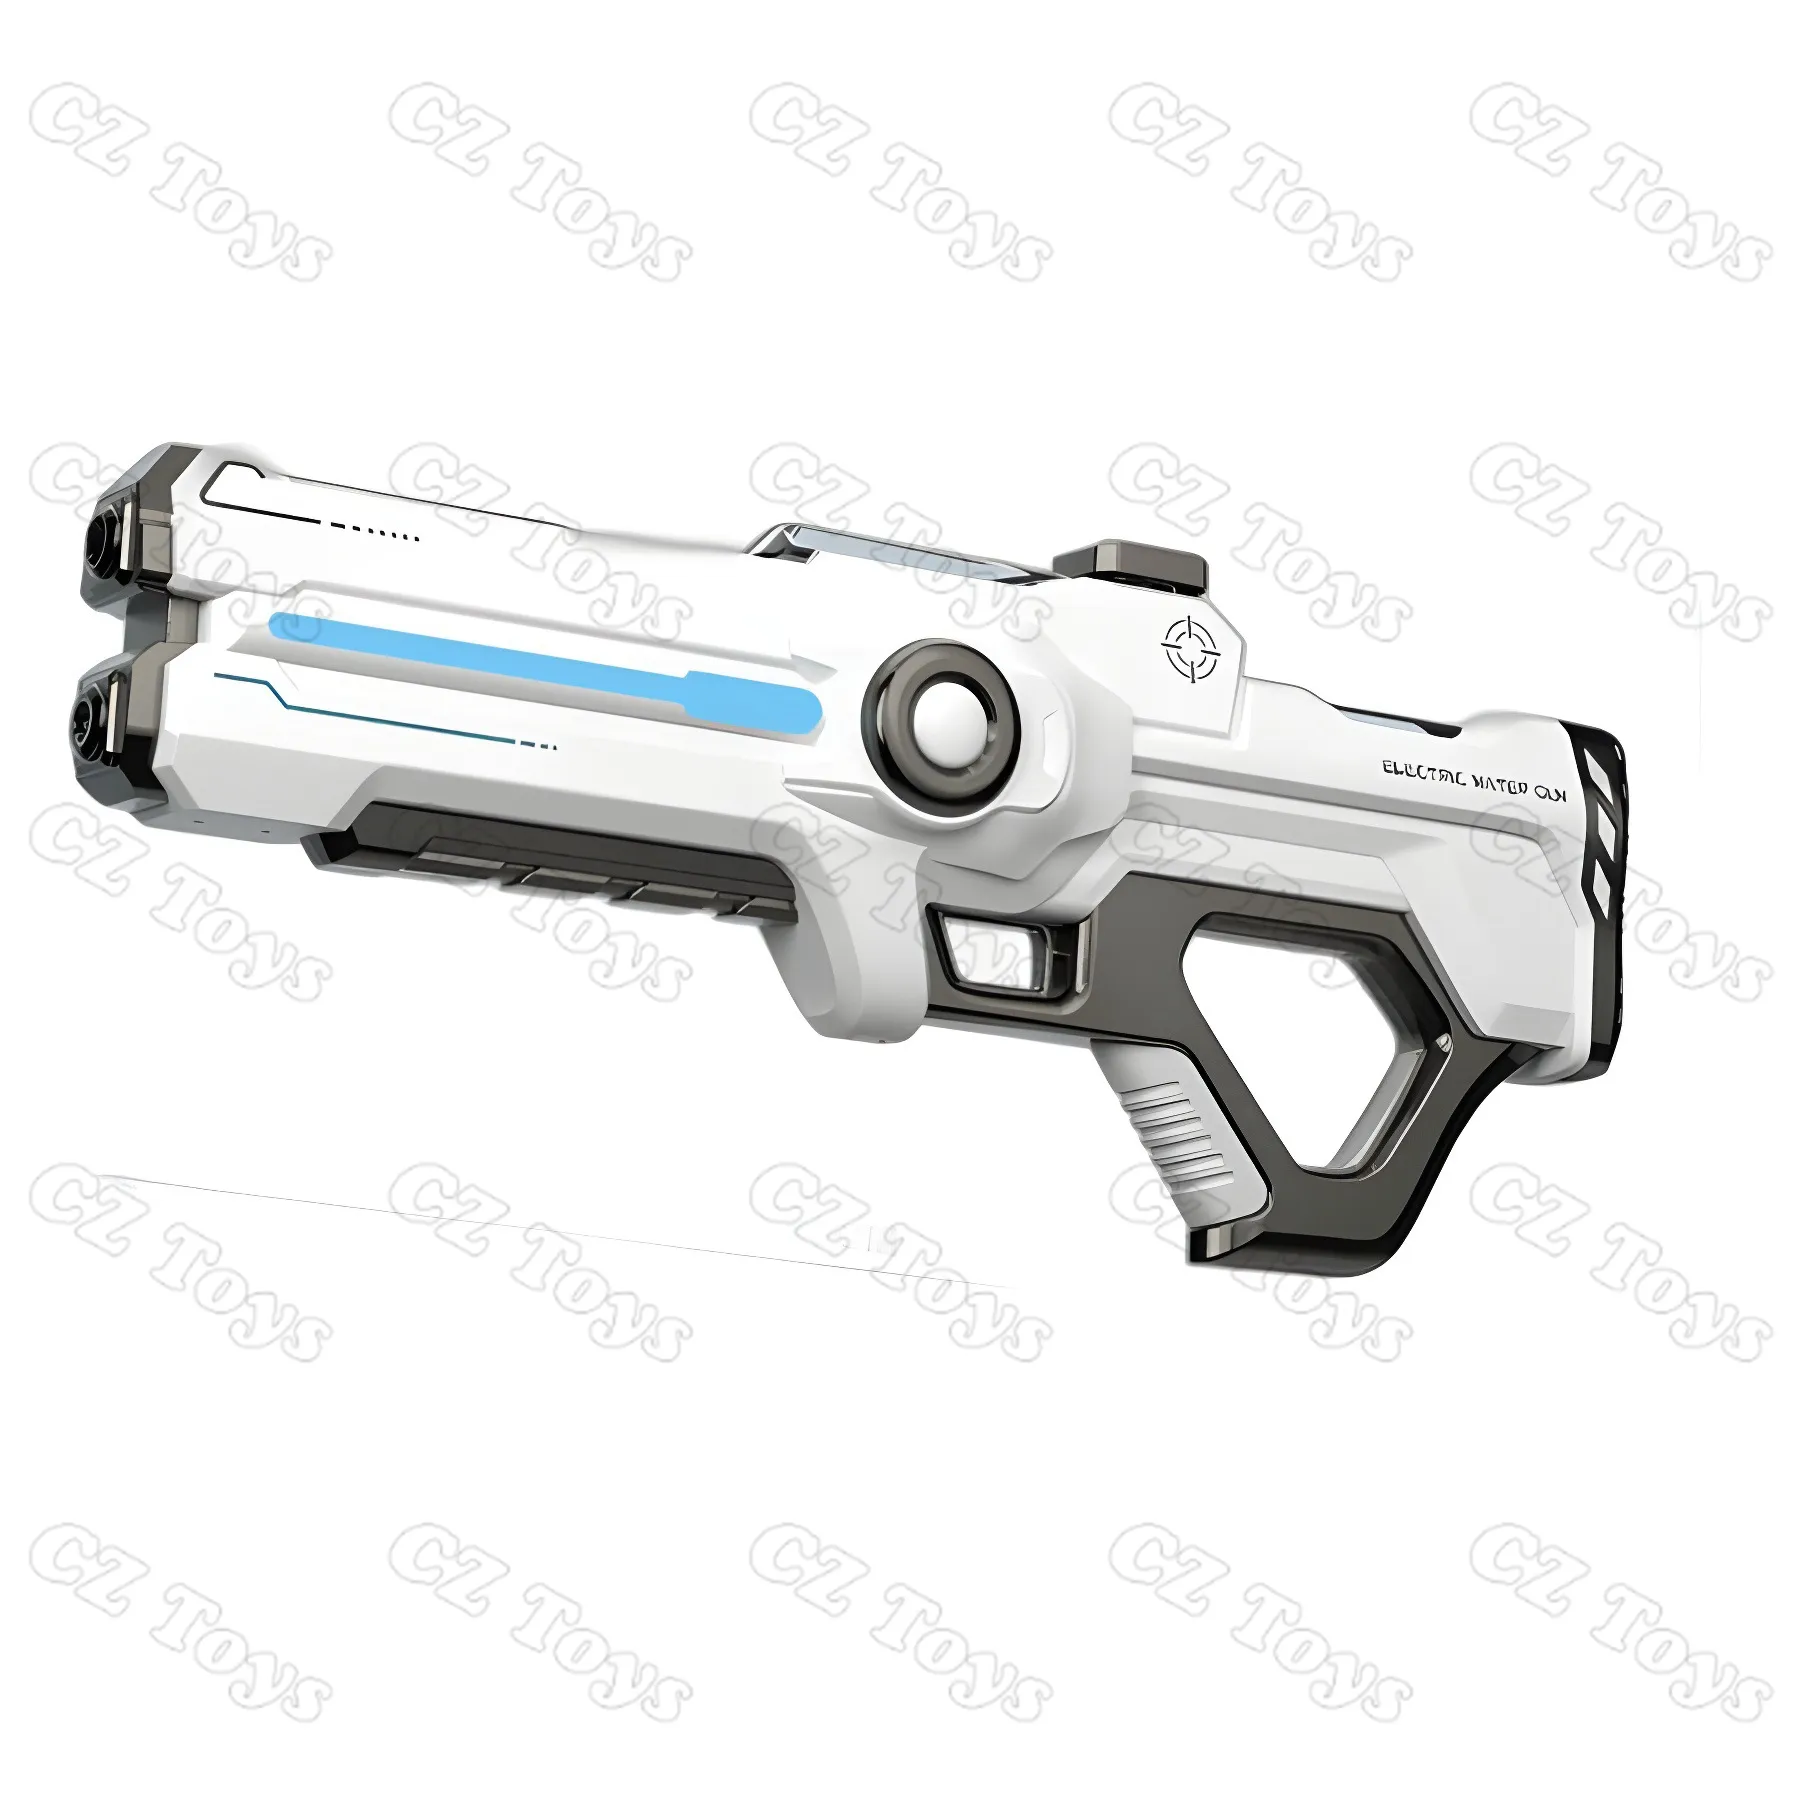 Nouveau design pistolets jouets interactifs rechargeables Power Sound Laser Tag Gun pour enfants guerrier jeu de bataille jouets en plein air